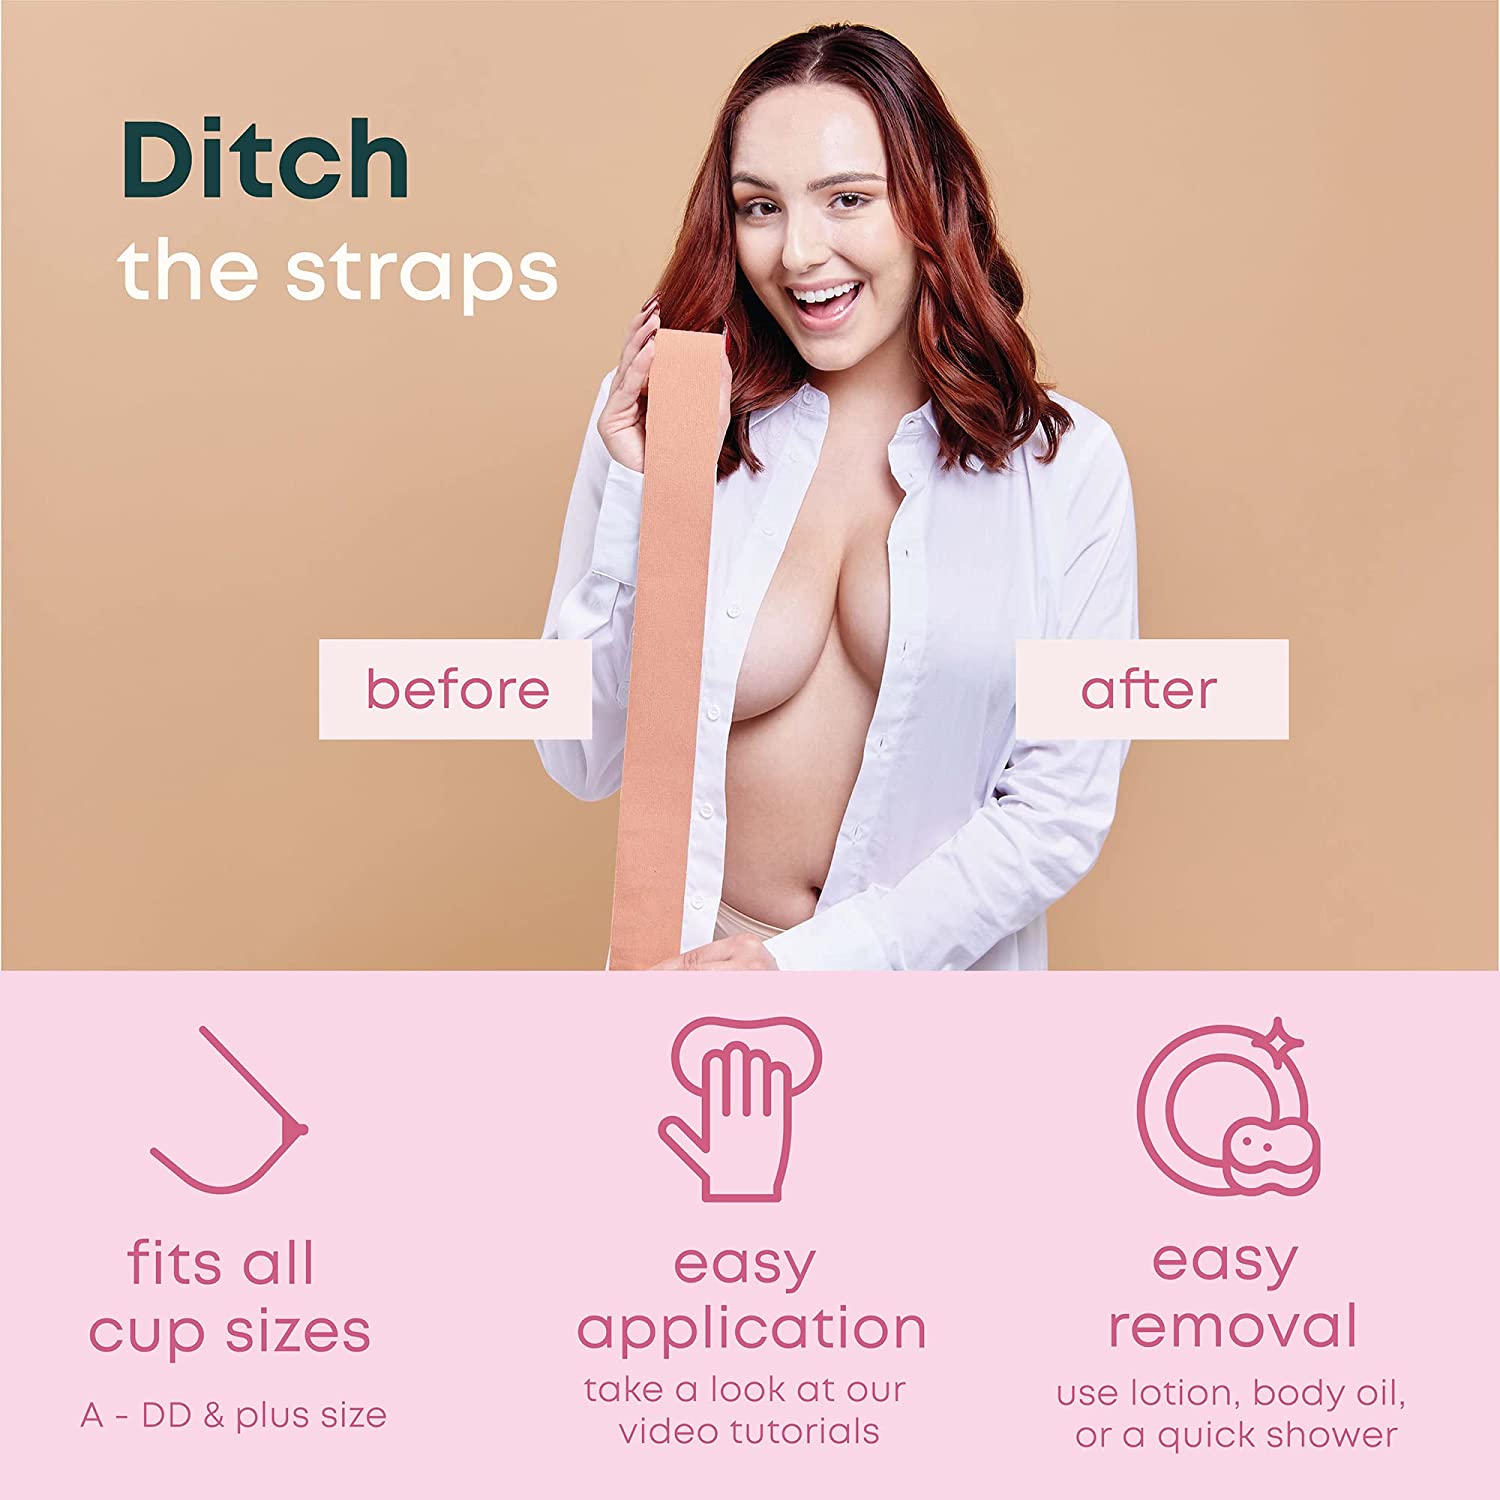 🔥Invisible Bra Women Breast Lift Nipple Cover Tape